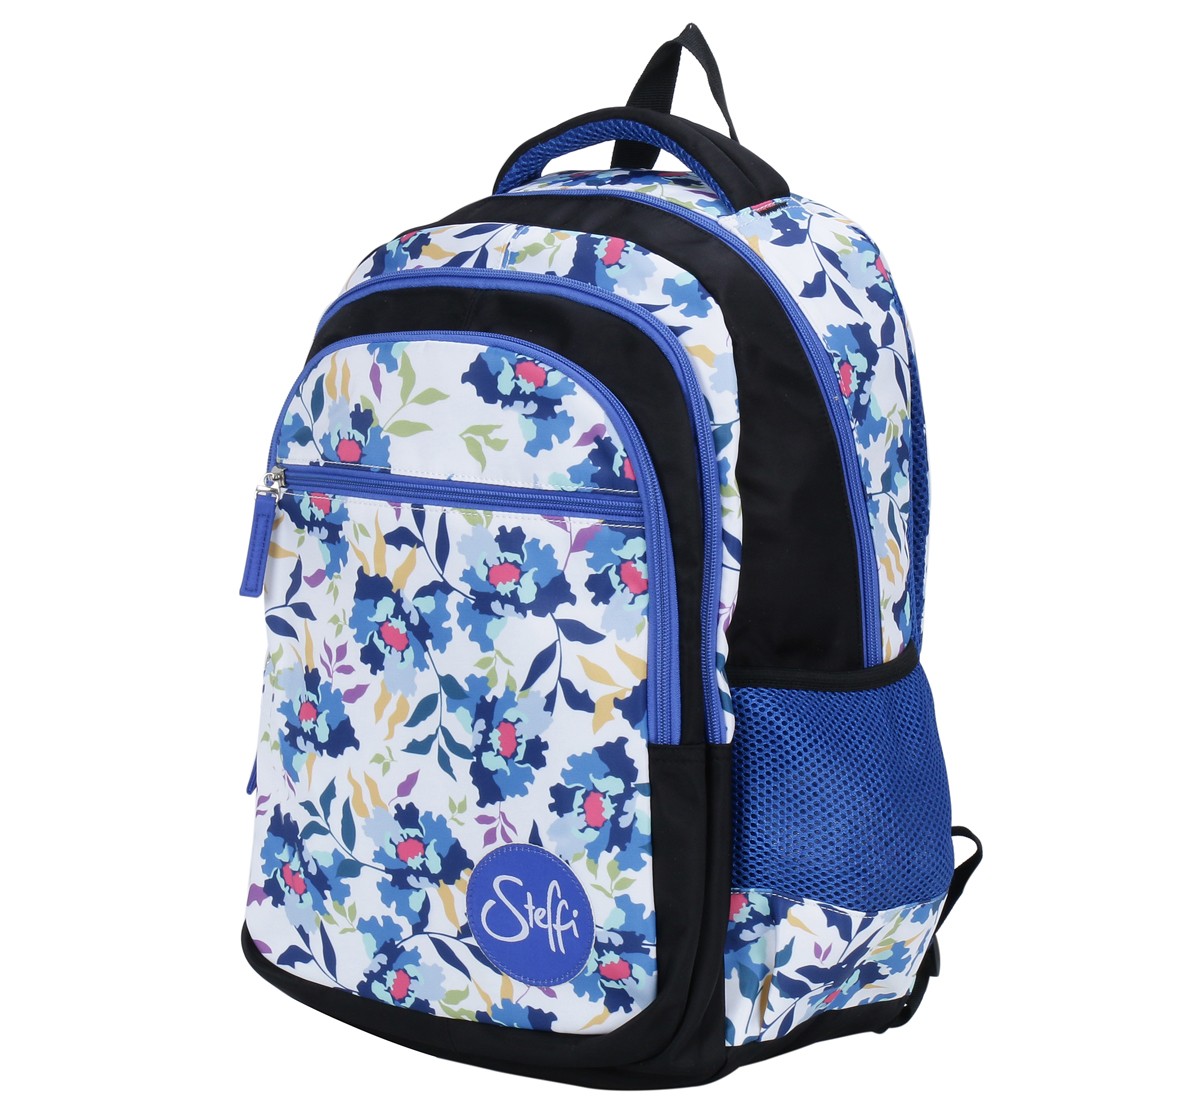 Simba Steffi Love Snowdrop 15 Backpack Multicolor 3Y+